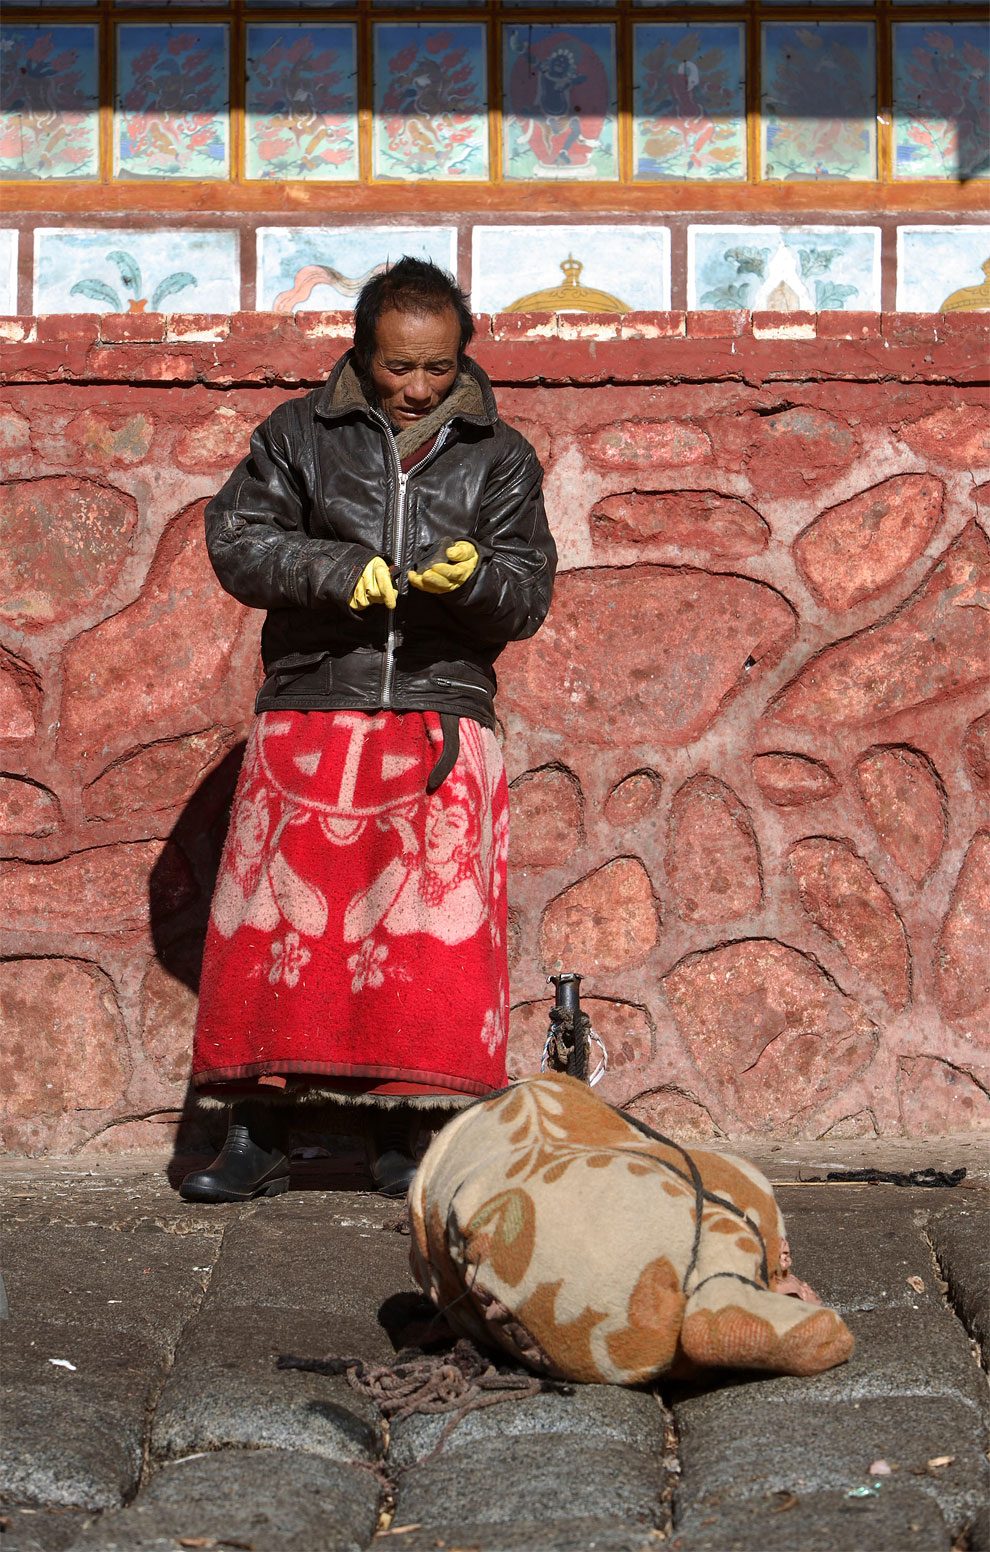 Sky Burial – Tibetans Perform Celestial Burial Ceremony (NSFW) » Design ...